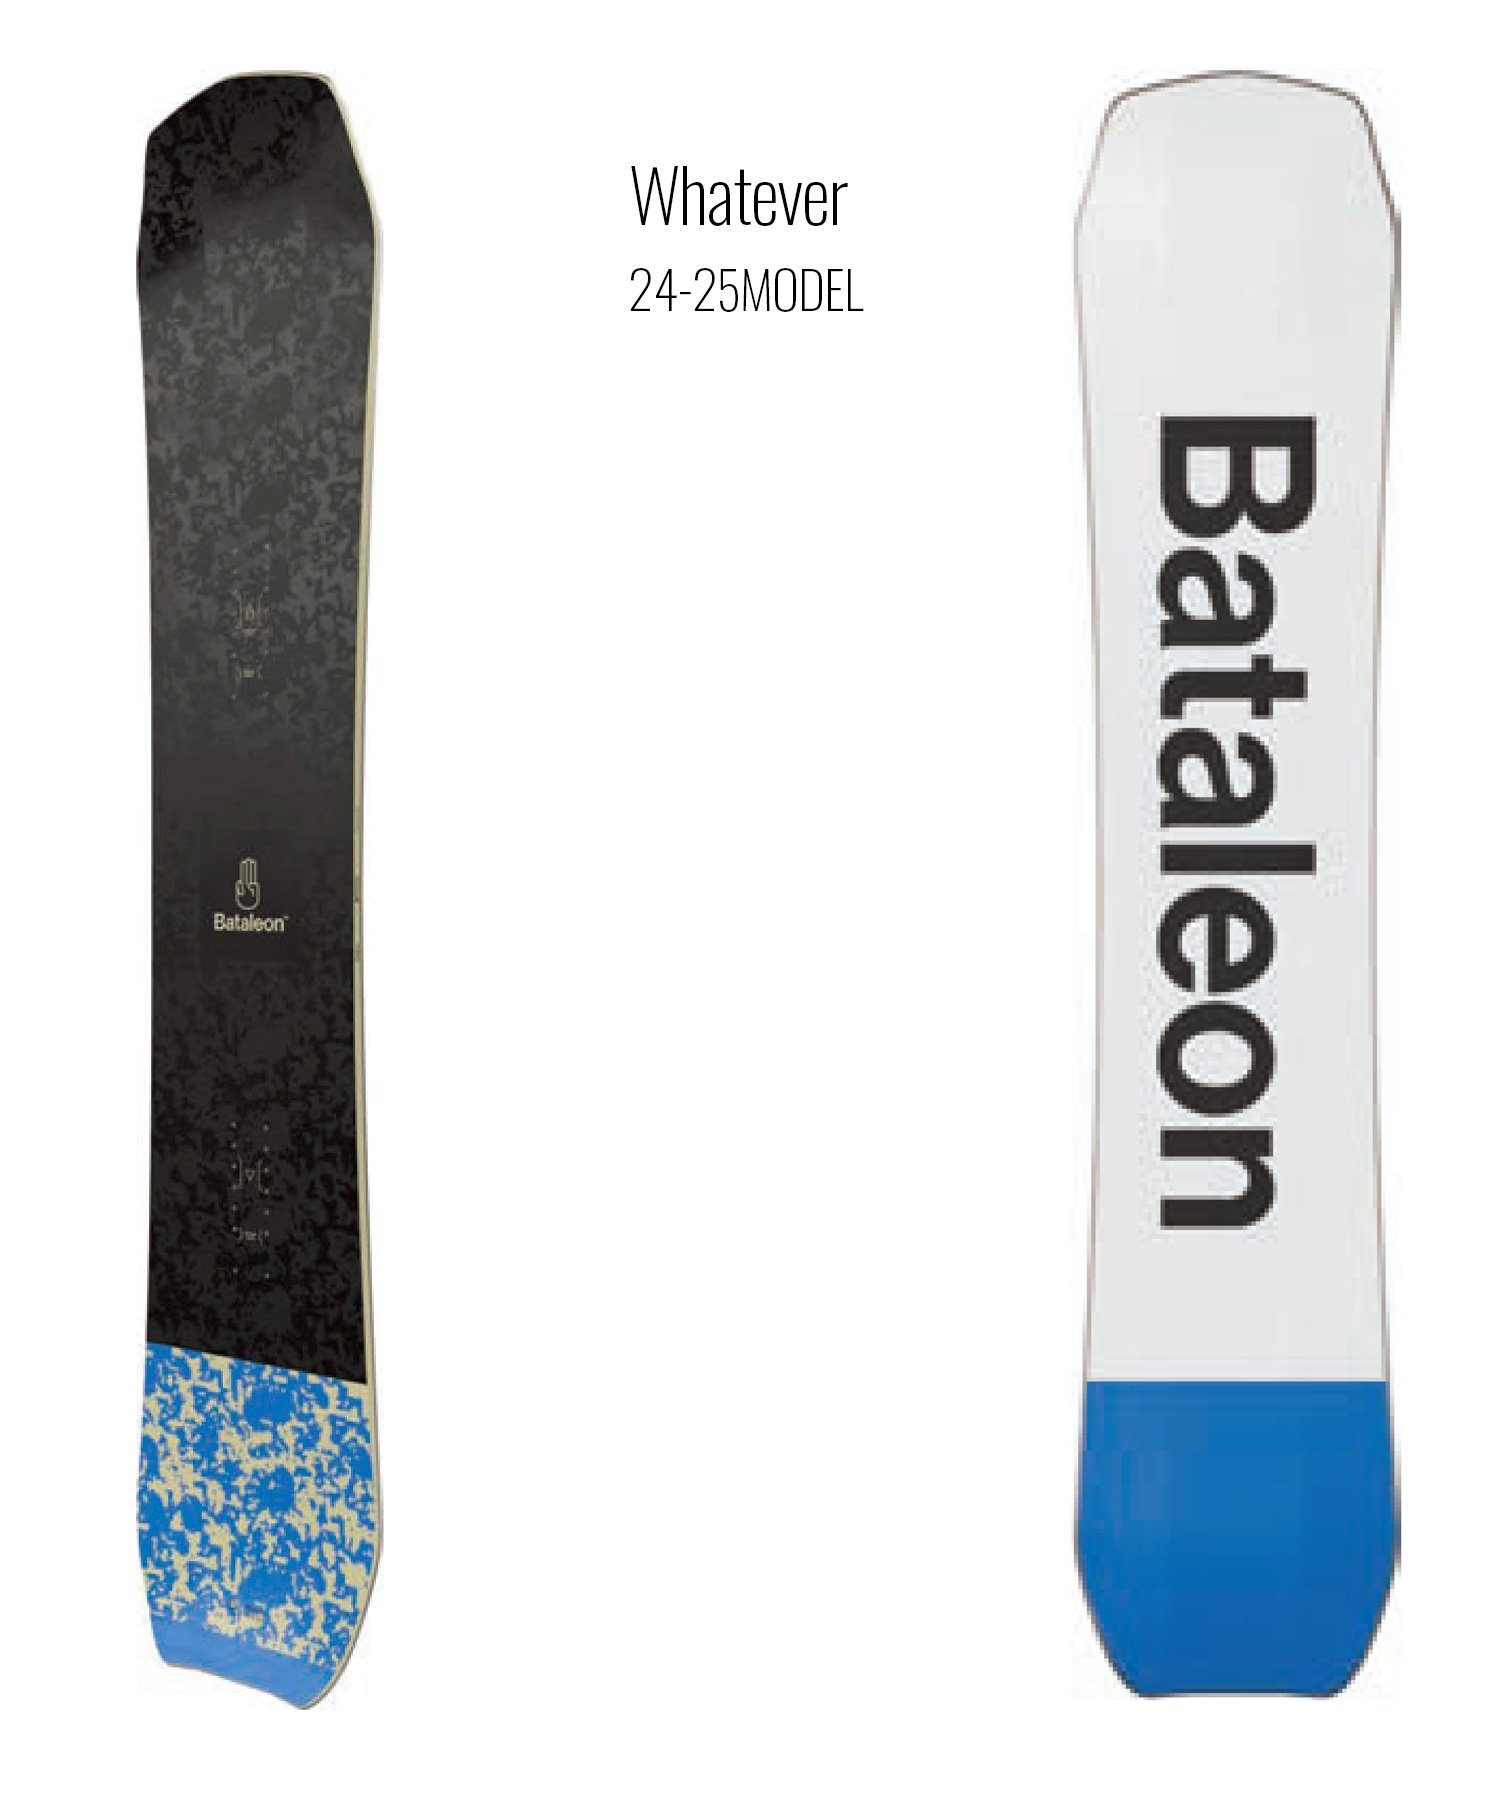 【早期購入】BATALEON バタレオン スノーボード 板 メンズ Whatever ムラサキスポーツ 24-25モデル LL B8(ONECOLOR-148cm)